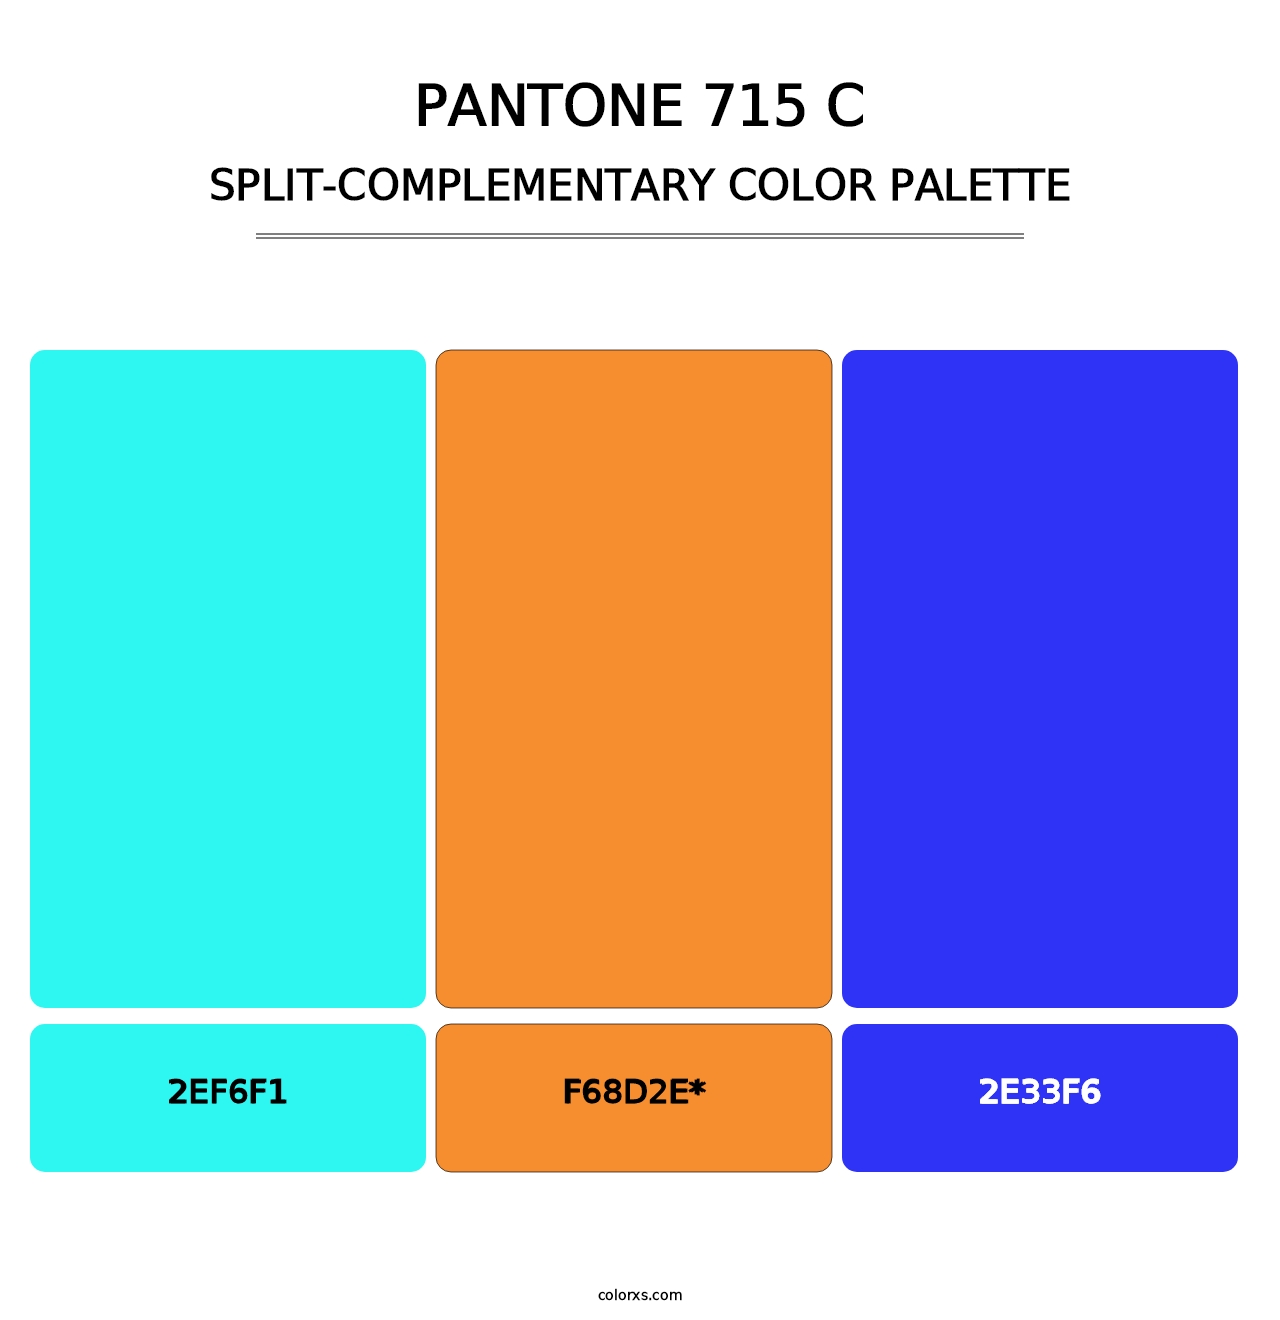 PANTONE 715 C - Split-Complementary Color Palette